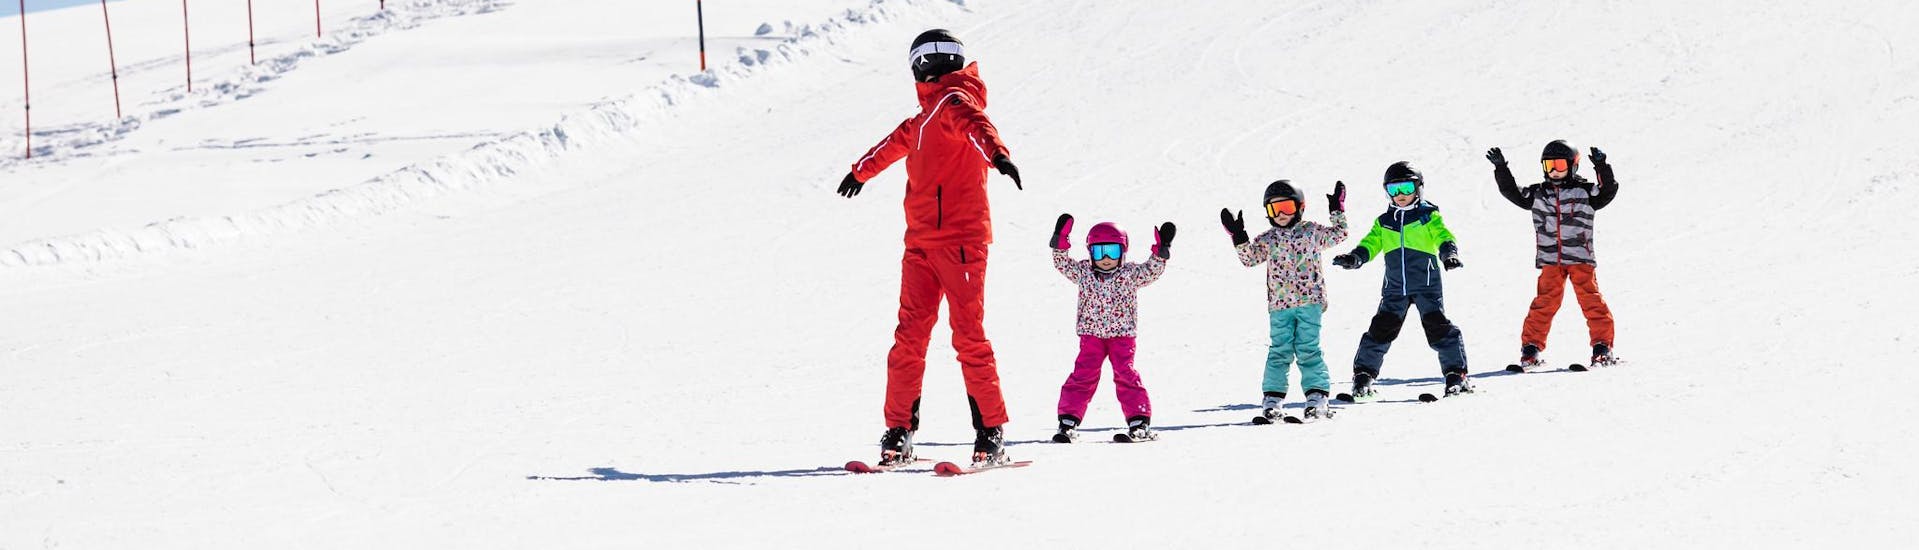 Maestro di sci e bambini che sciano sulle piste durante una lezione di sci.